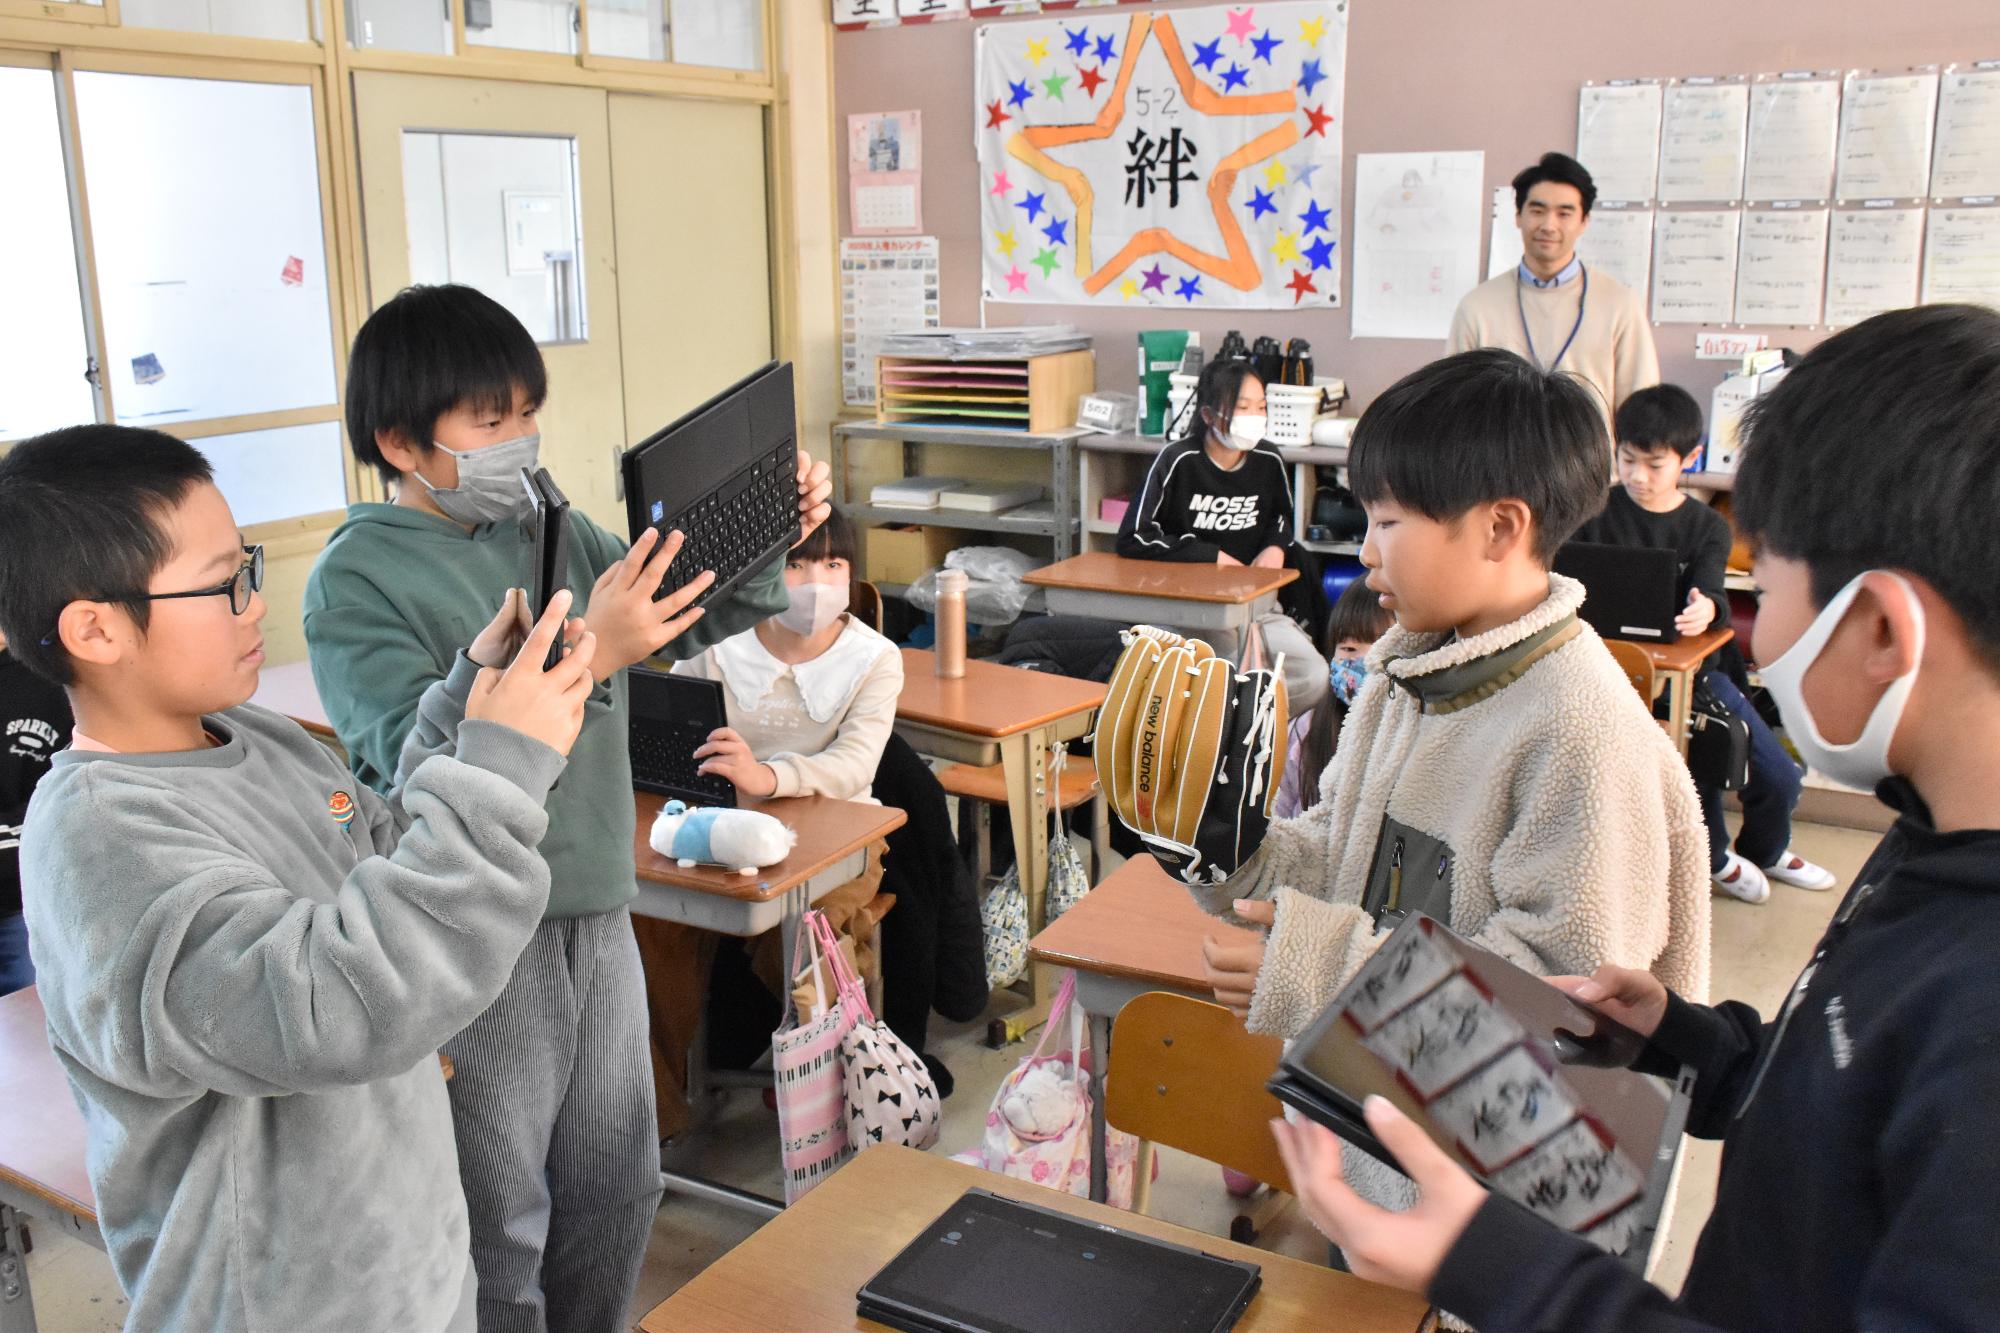 大谷翔平選手寄贈グローブを付けてタブレットで撮影している様子